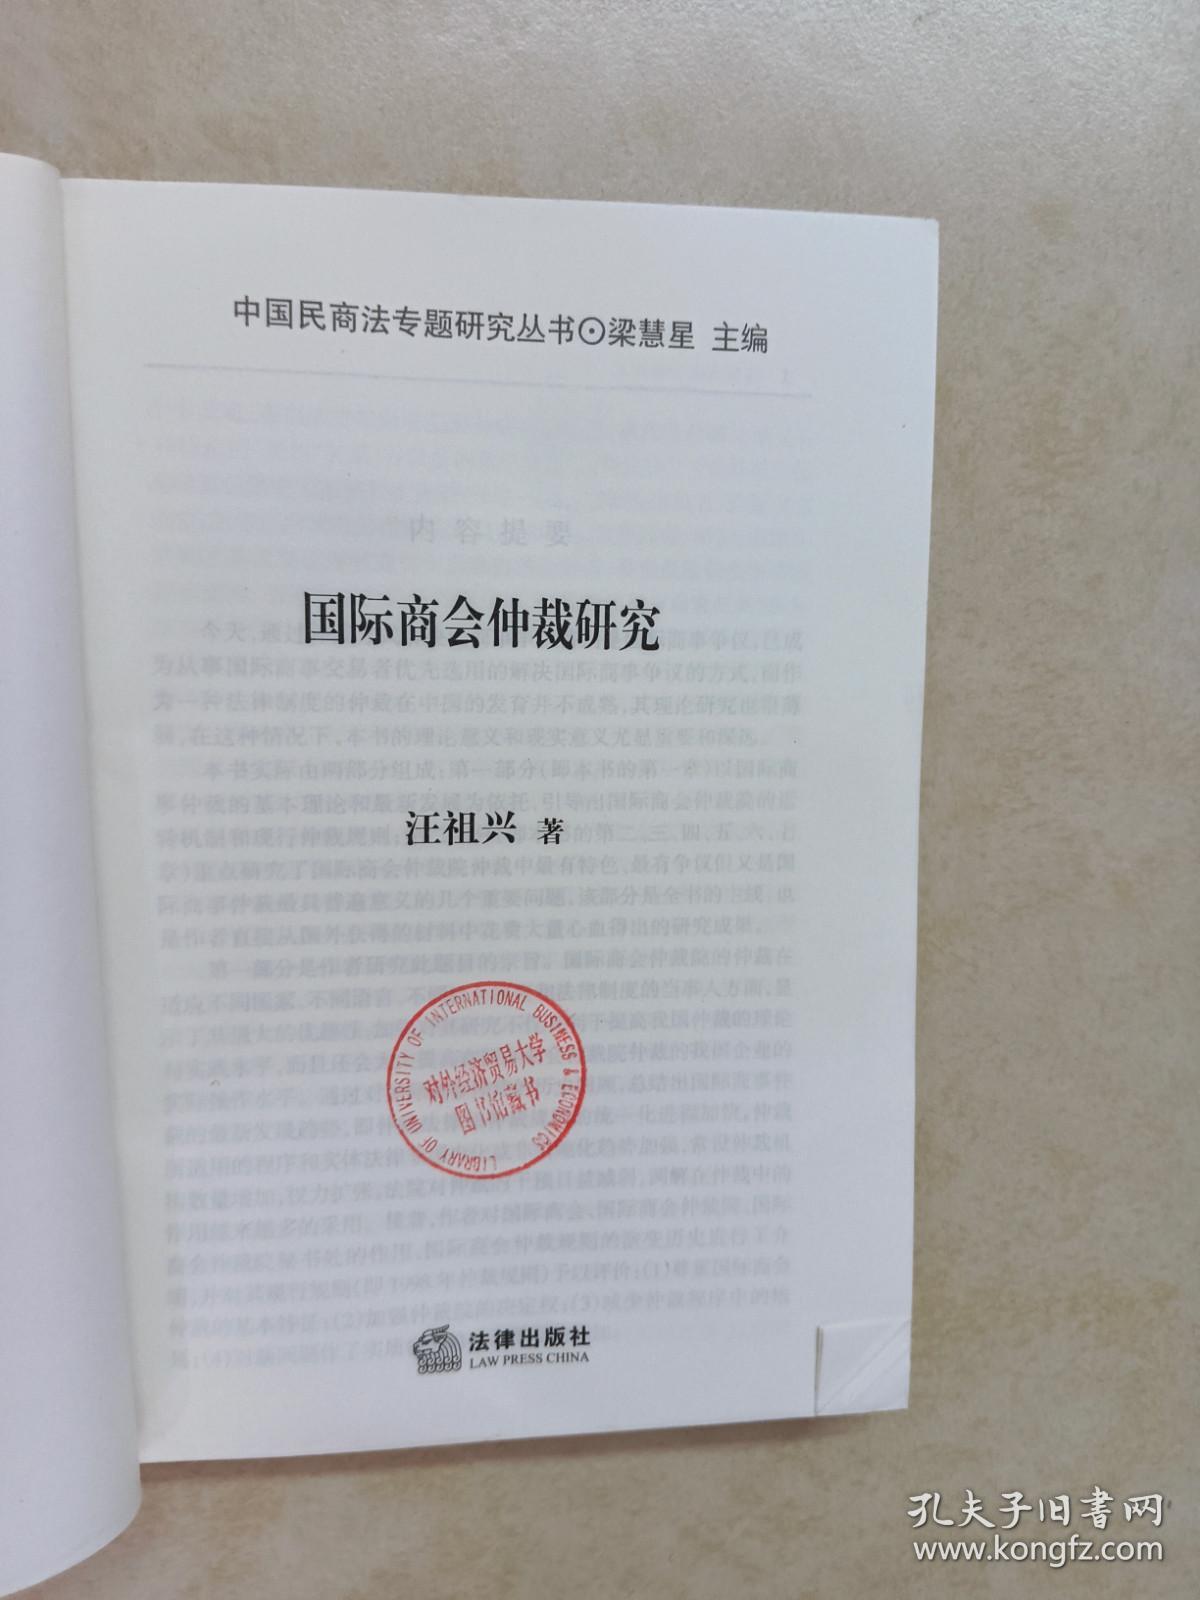 国际商会仲裁研究——中国民商法专题研究丛书